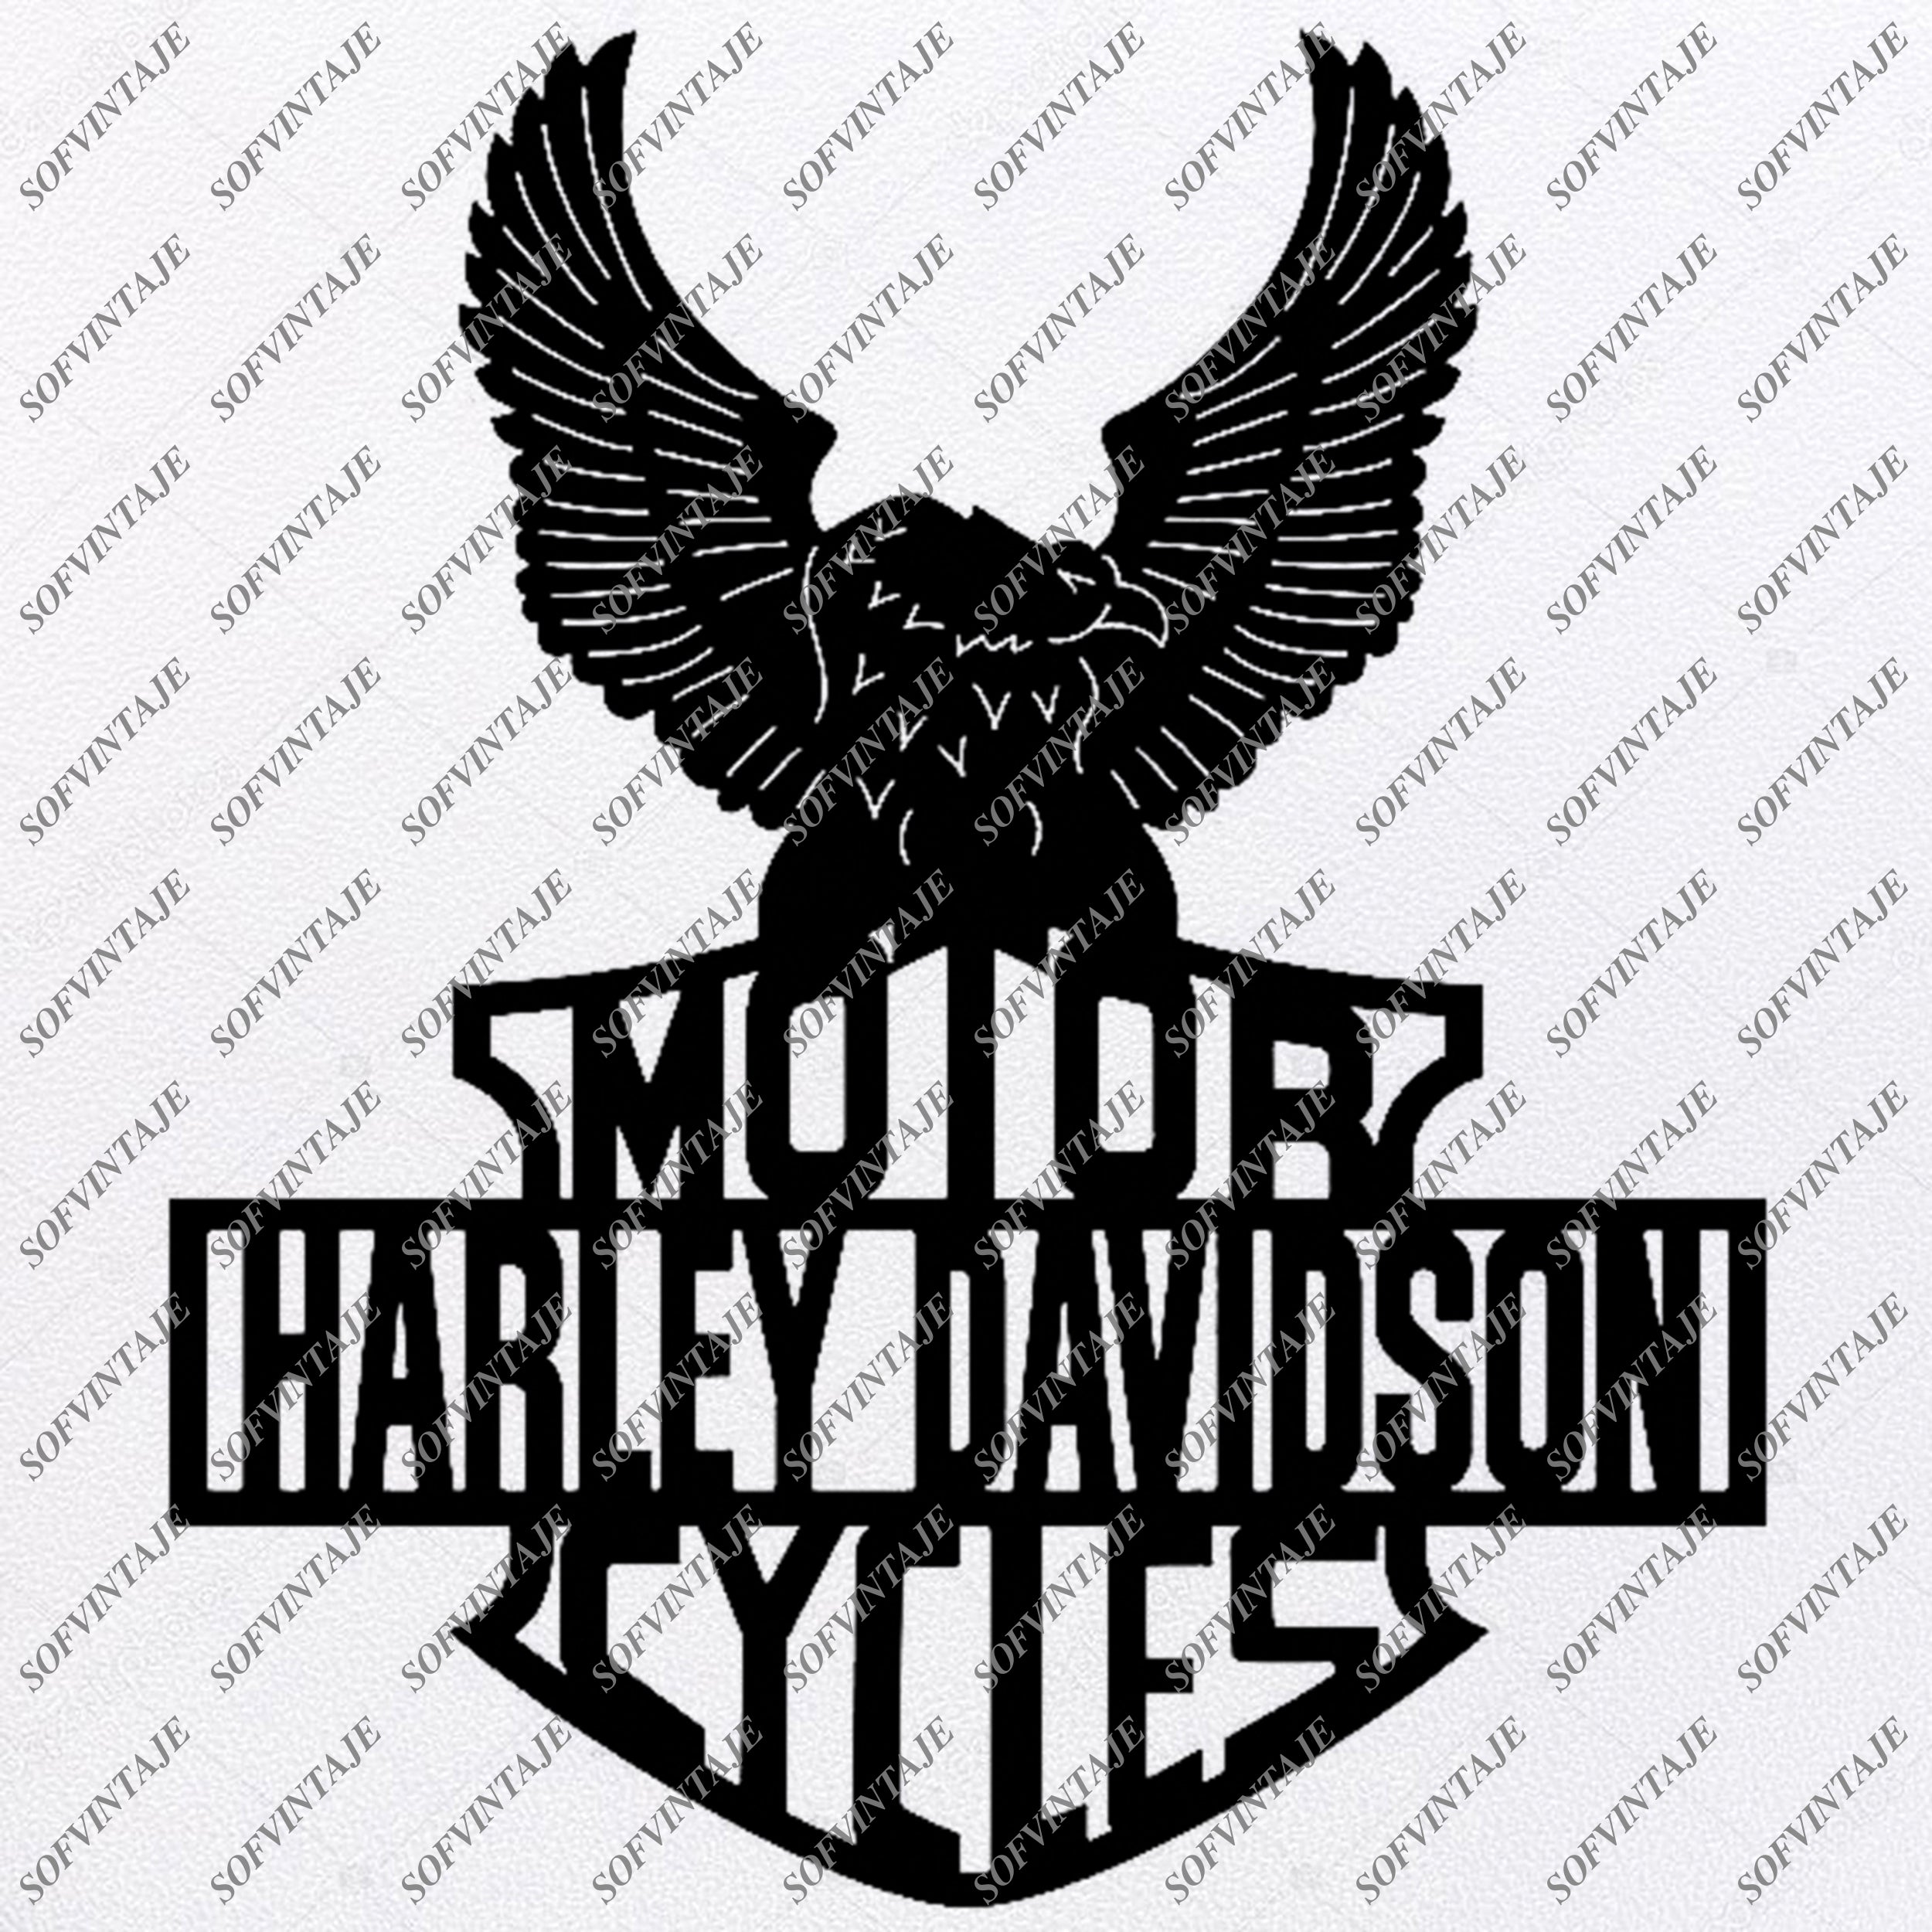 Download Harley Davidson Harley Davidson Svg File Harley Davidson Svg Desig Sofvintaje SVG, PNG, EPS, DXF File